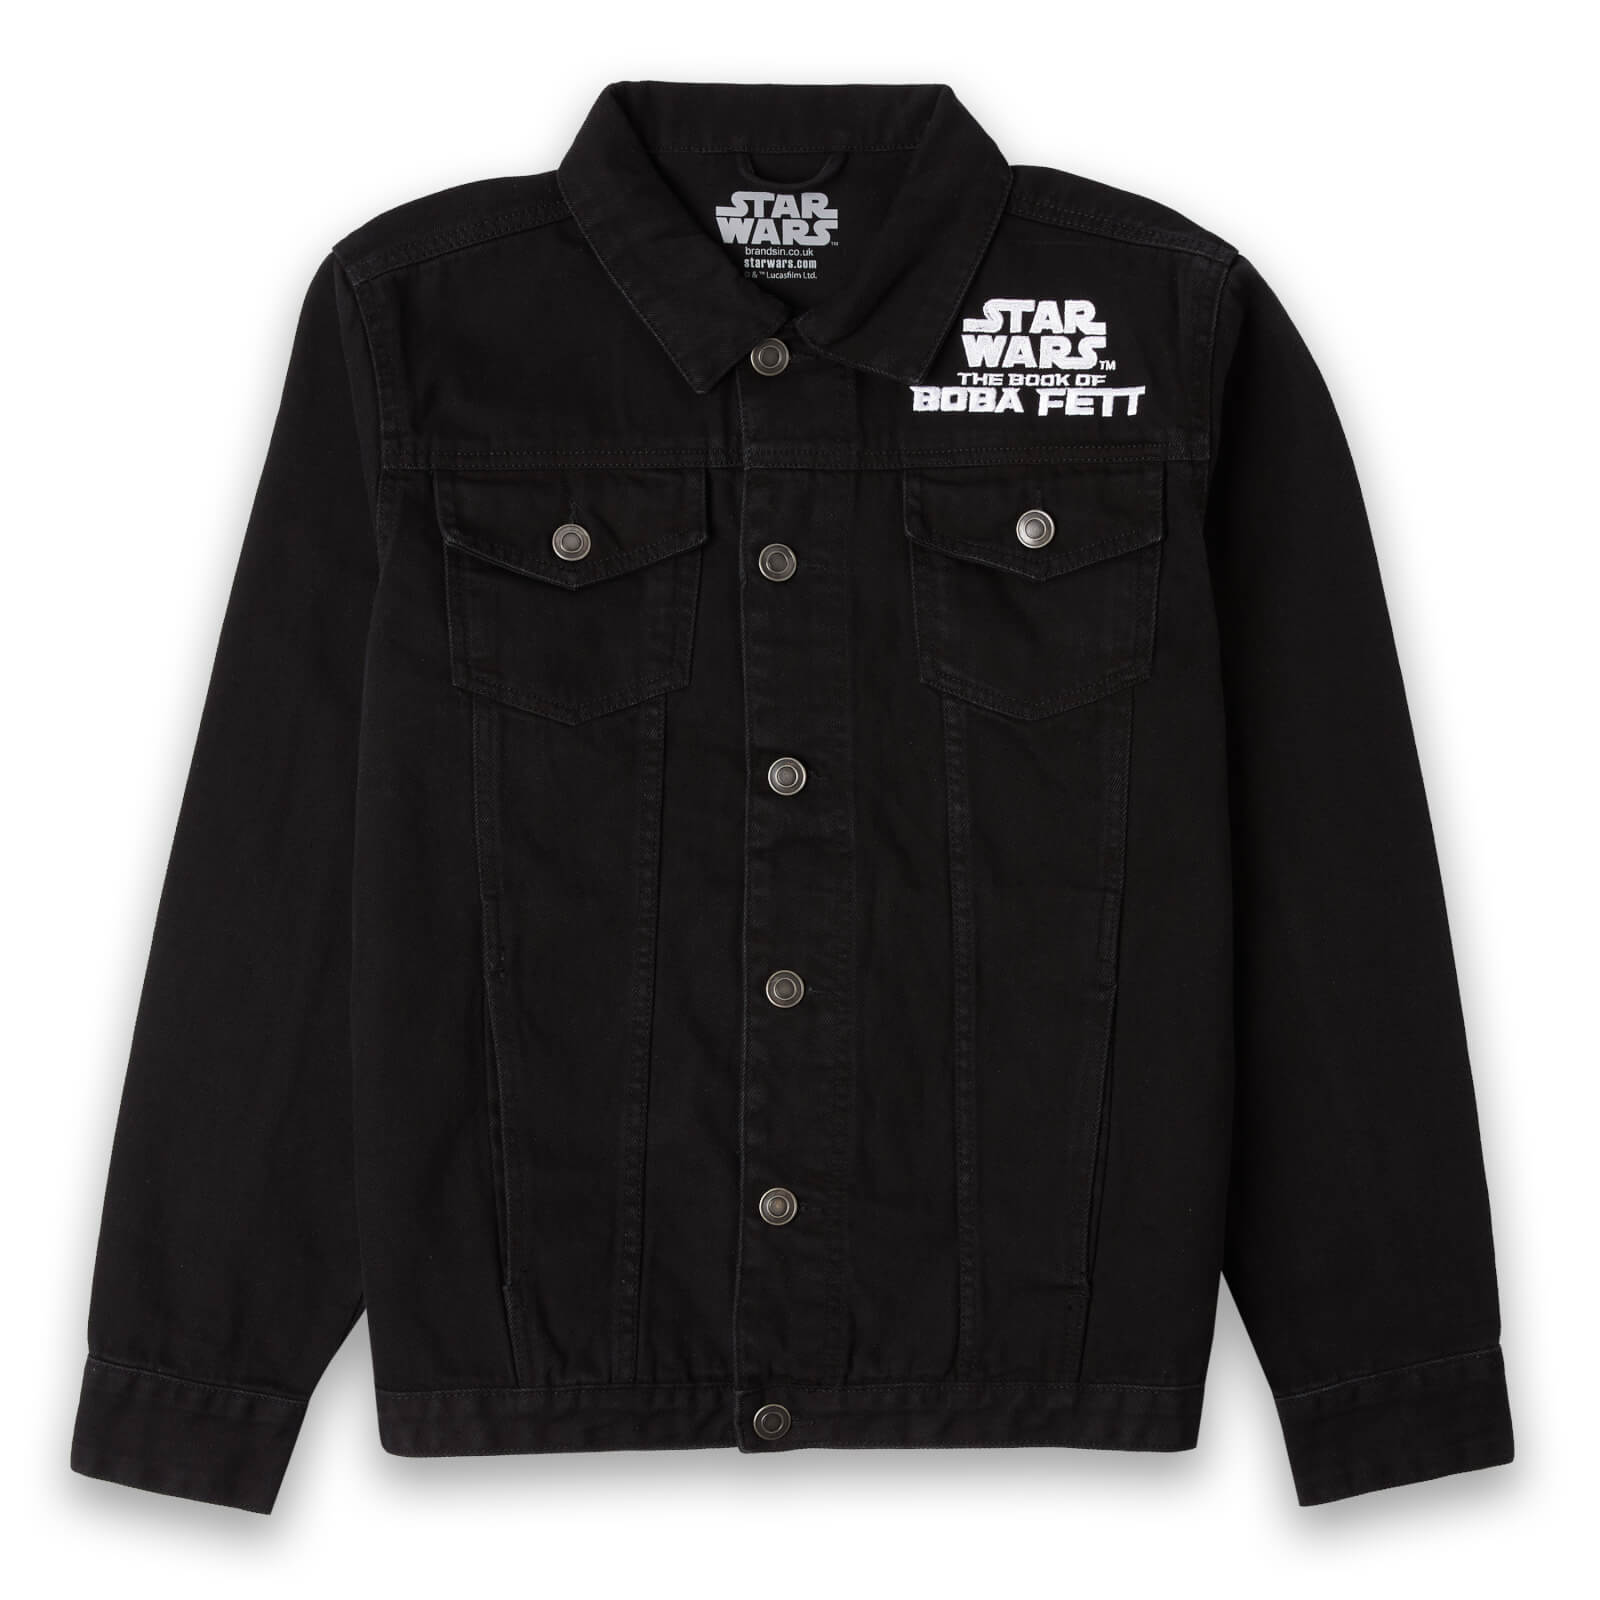 Star Wars Painted Embroidered Unisex Denim Jacket - Black - S - Zwart